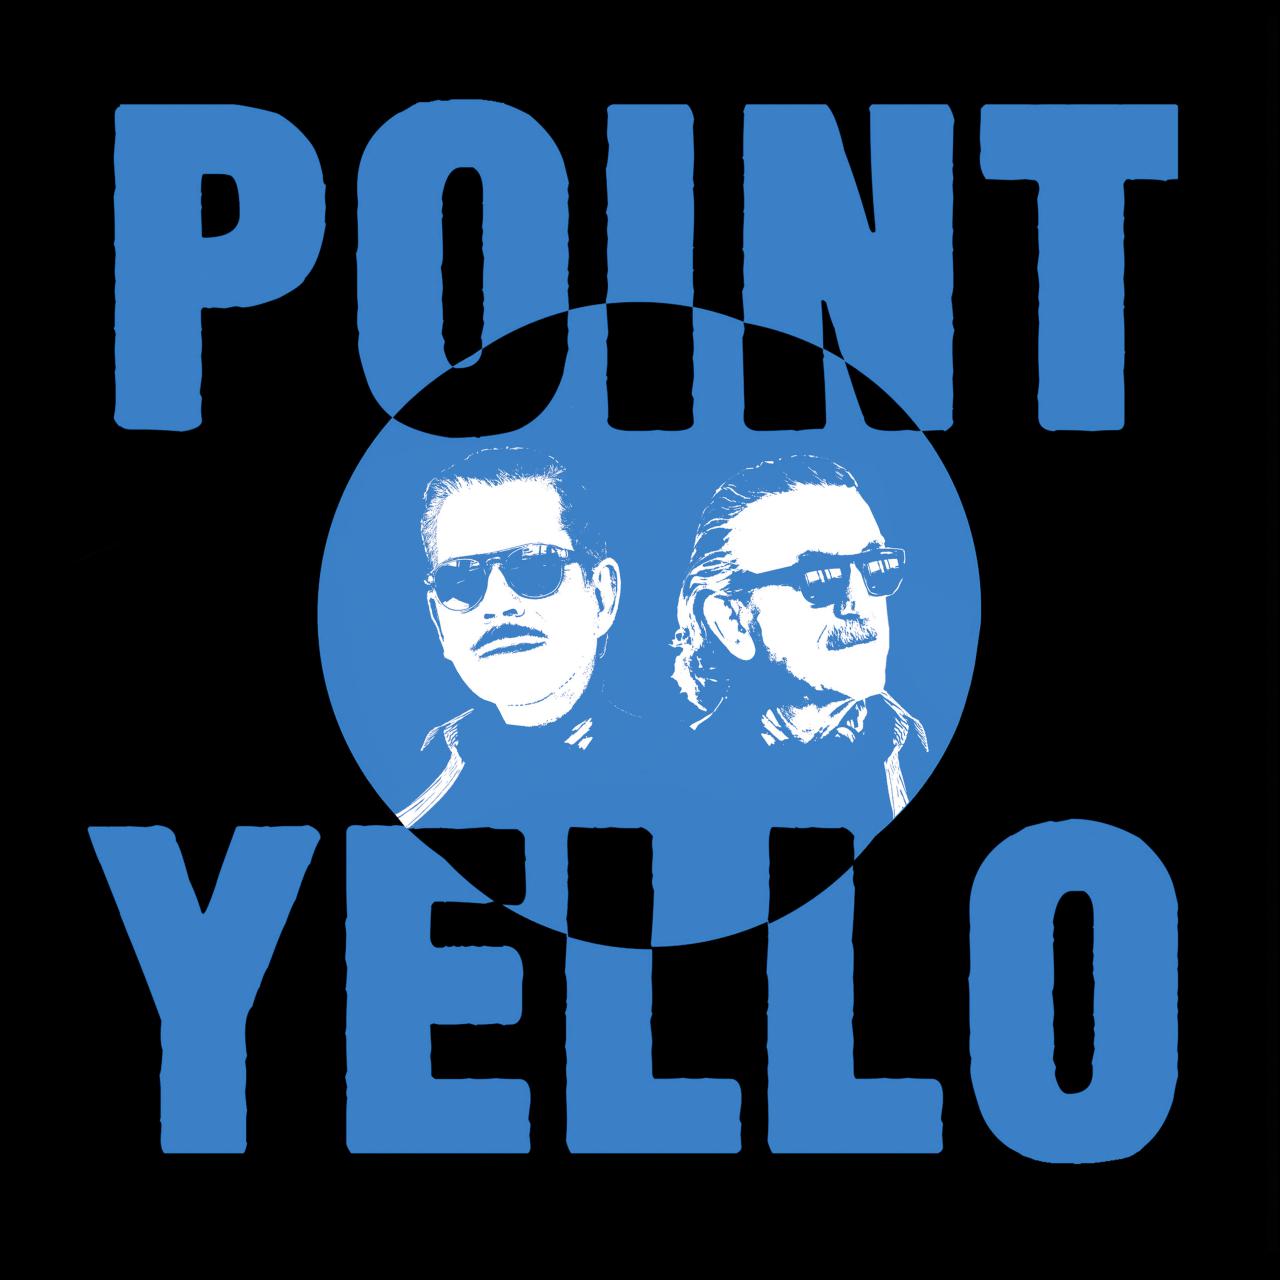 Das Albumcover von »Point« des Musikerduos Yello. Oben steht »Point«, unten steht »Yello« und in der Mitte ist ein Kreis, der den Scherenschnitt der beiden Köpfe der Musiker darstellt.